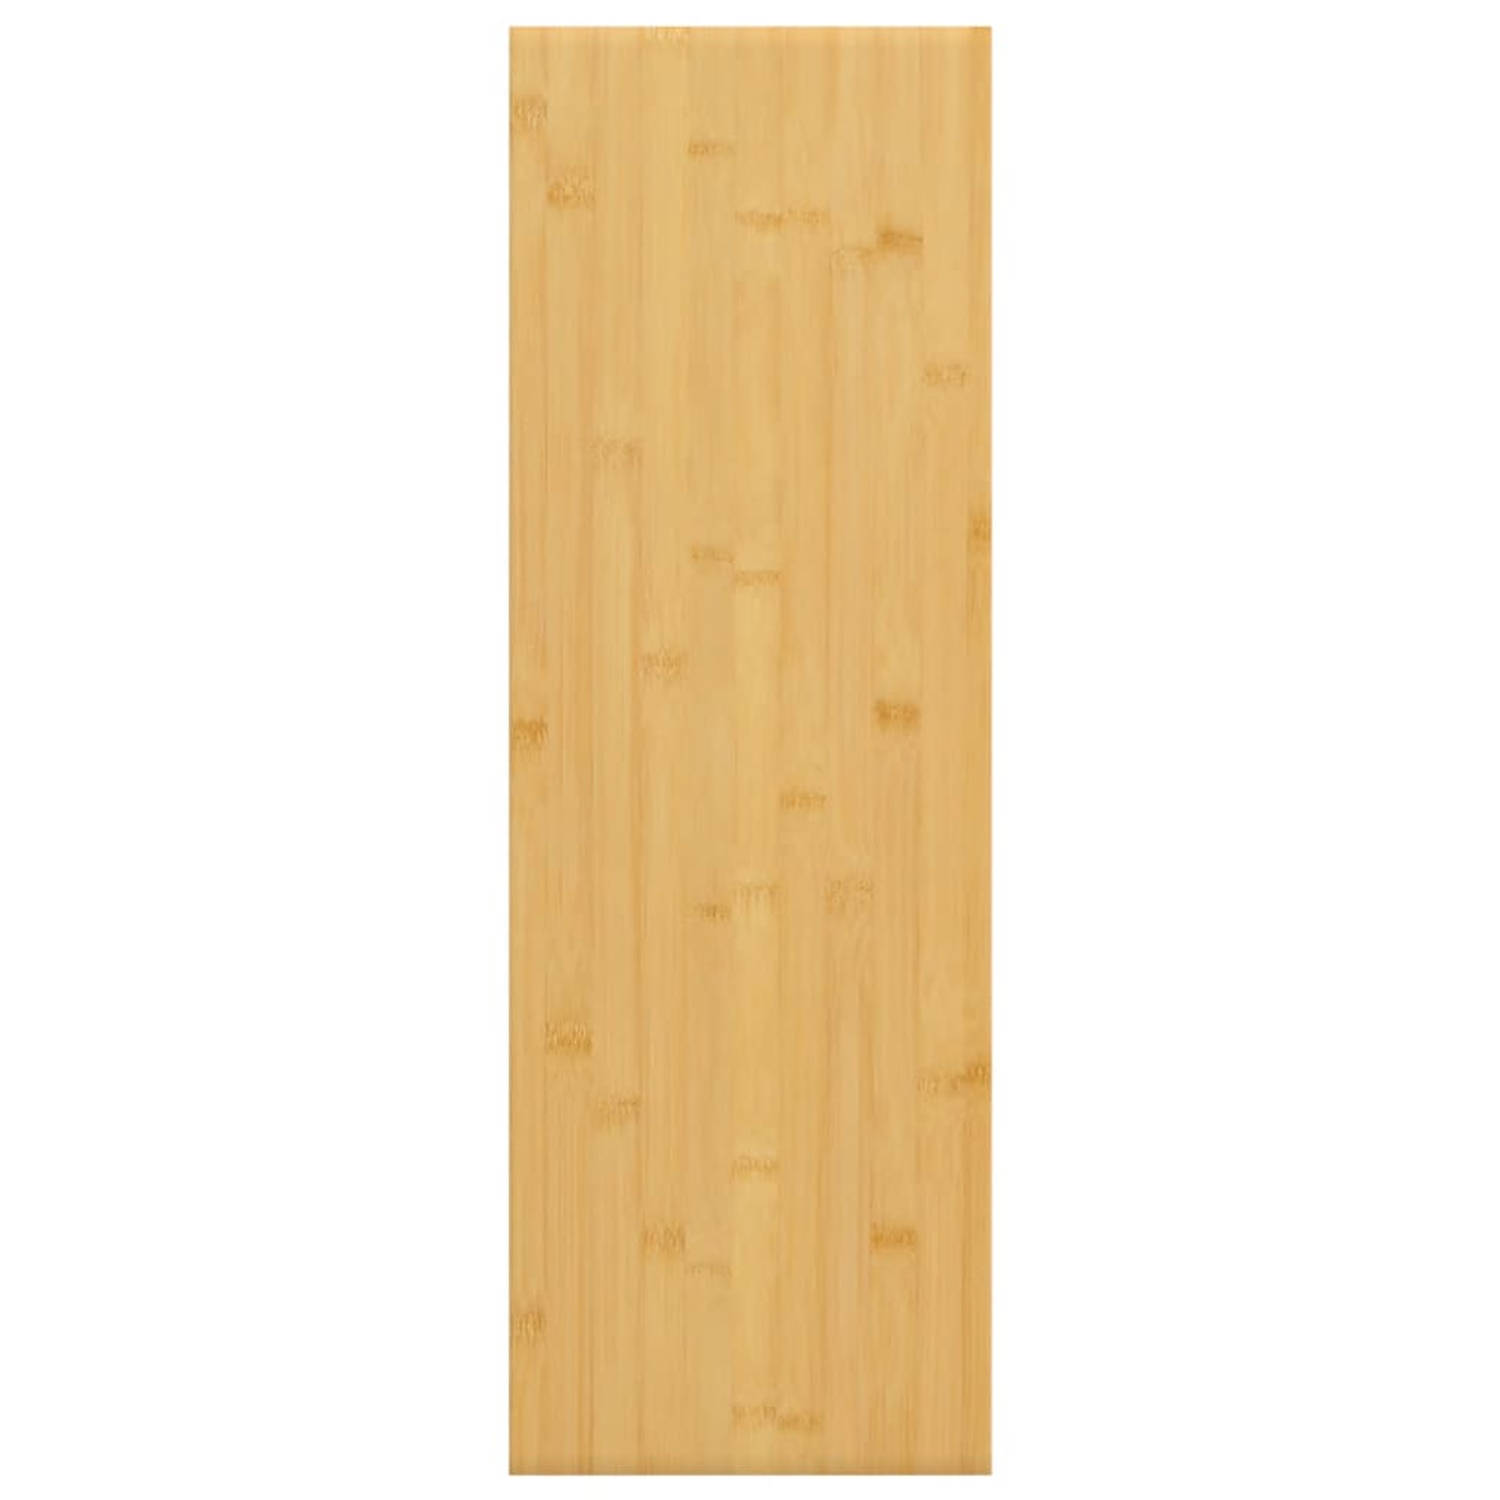 The Living Store Wandplank Bamboe - 60 x 20 x 4 cm - Duurzaam materiaal - Extra opbergruimte - Decoratieve functie - Eenvoudig schoon te maken